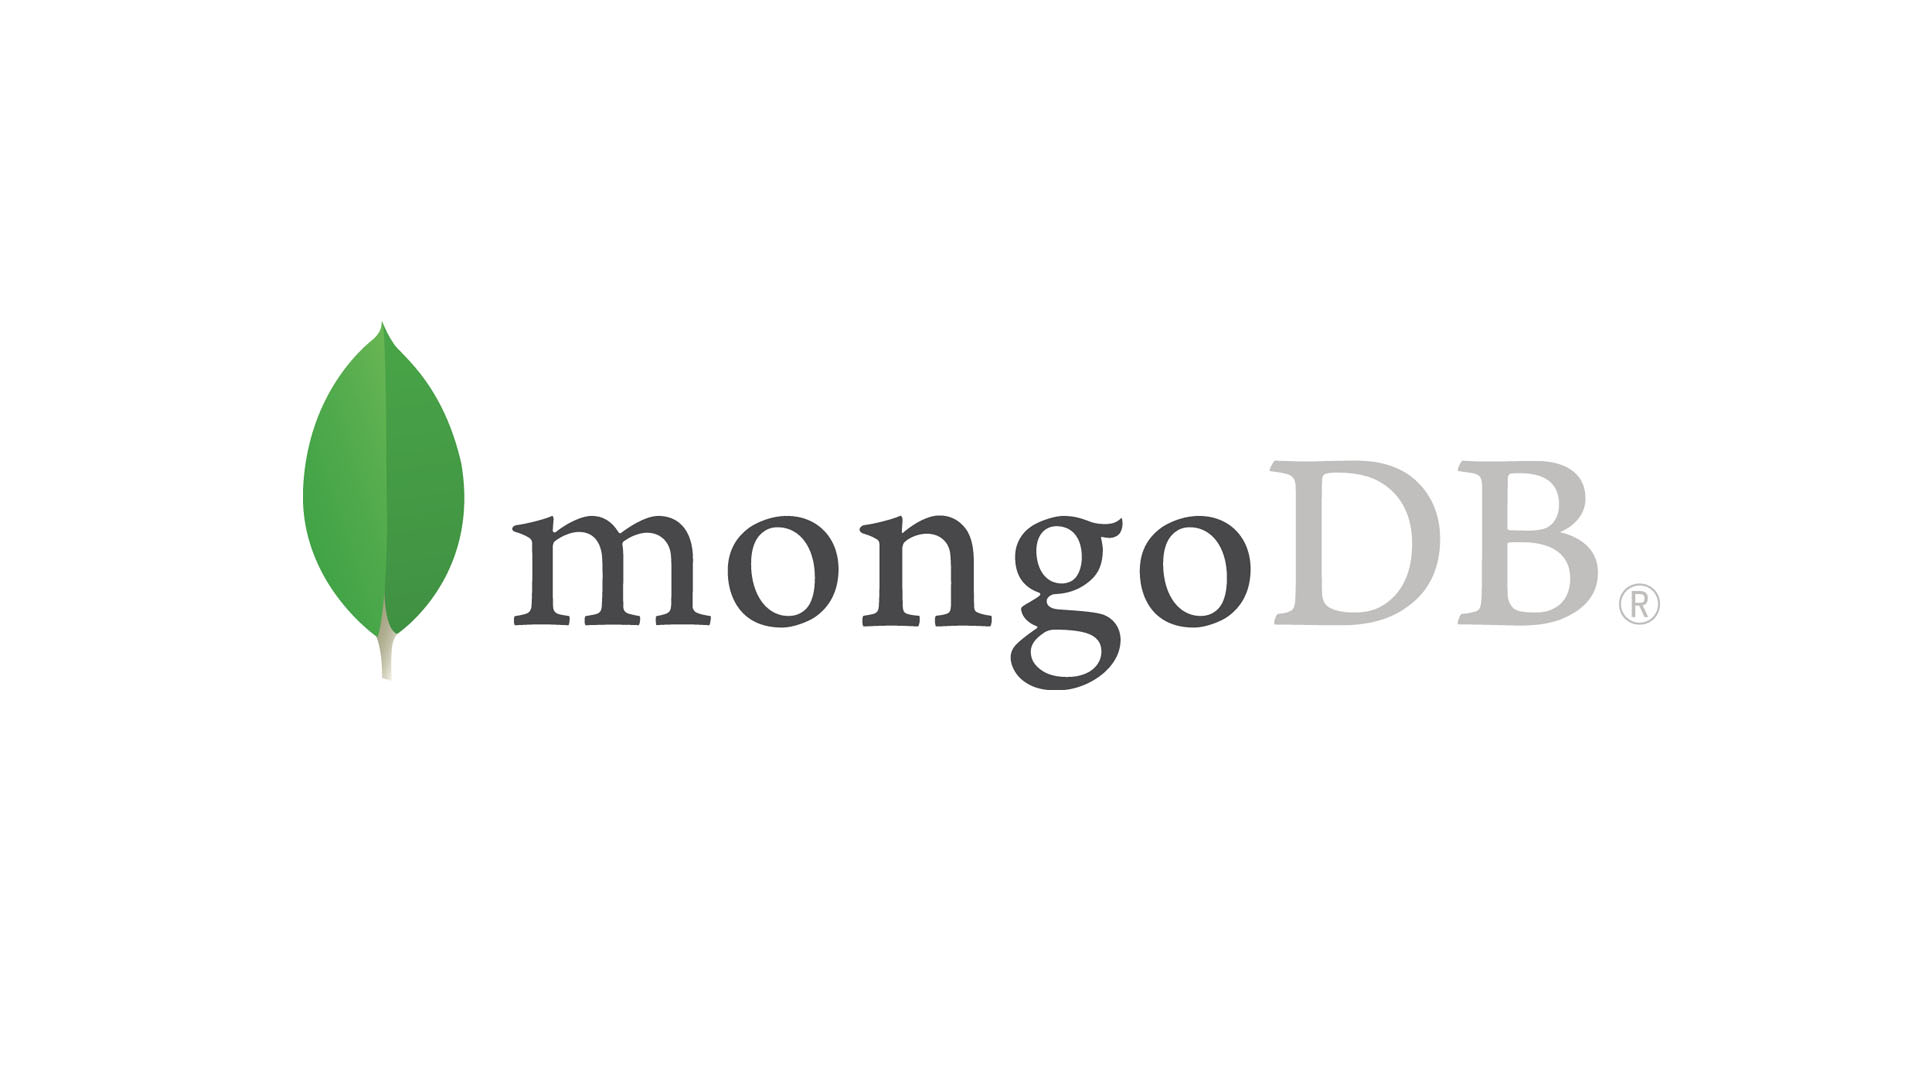 Deploy a HighlyAvailable MongoDB Replica Set on AWS